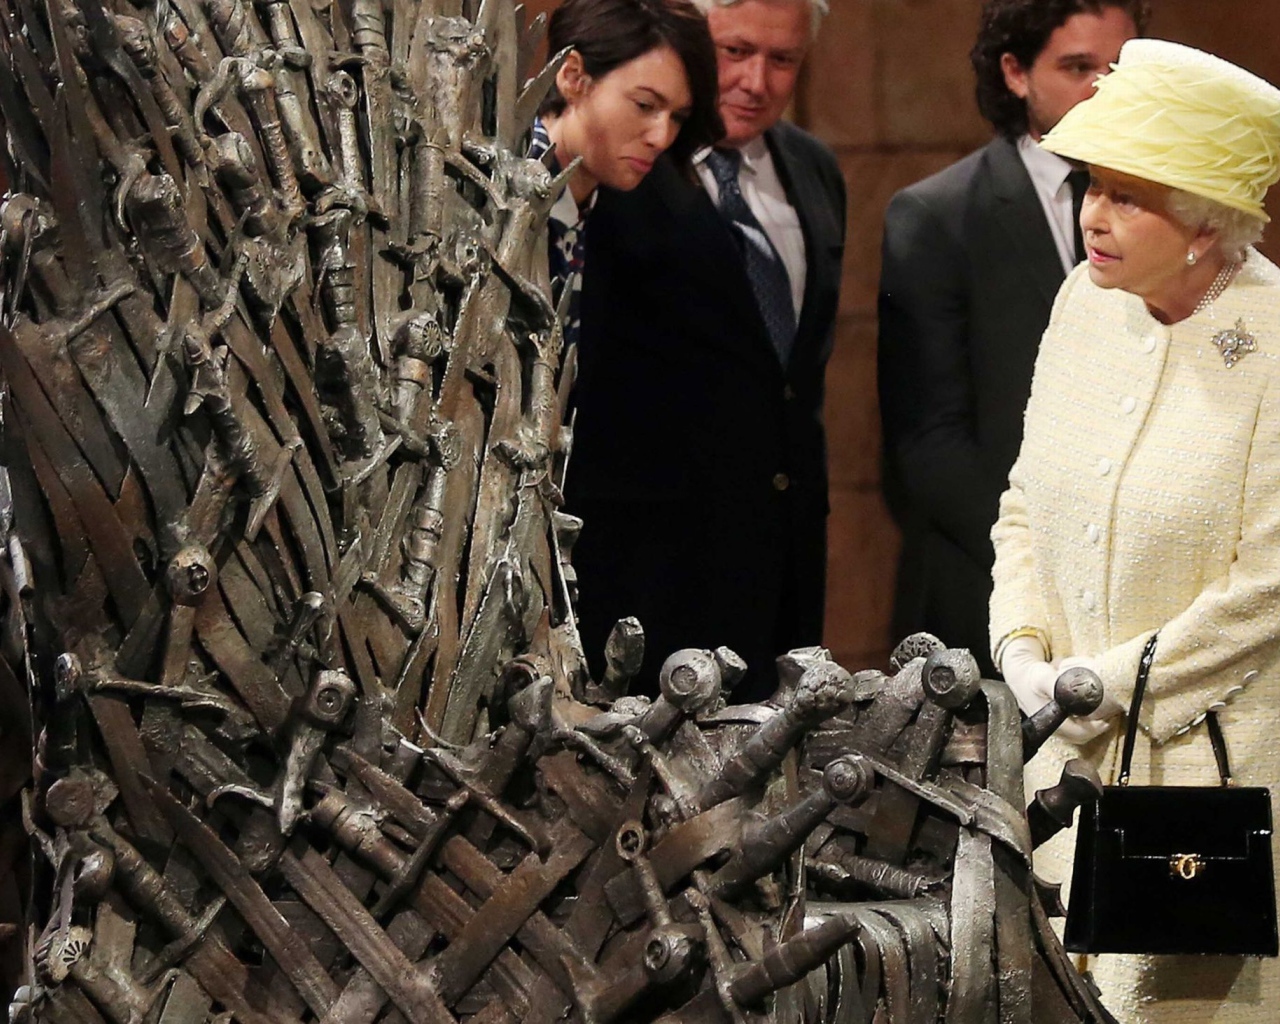 Королева Елизавета осматривает железный трон из сериала Игры престолов